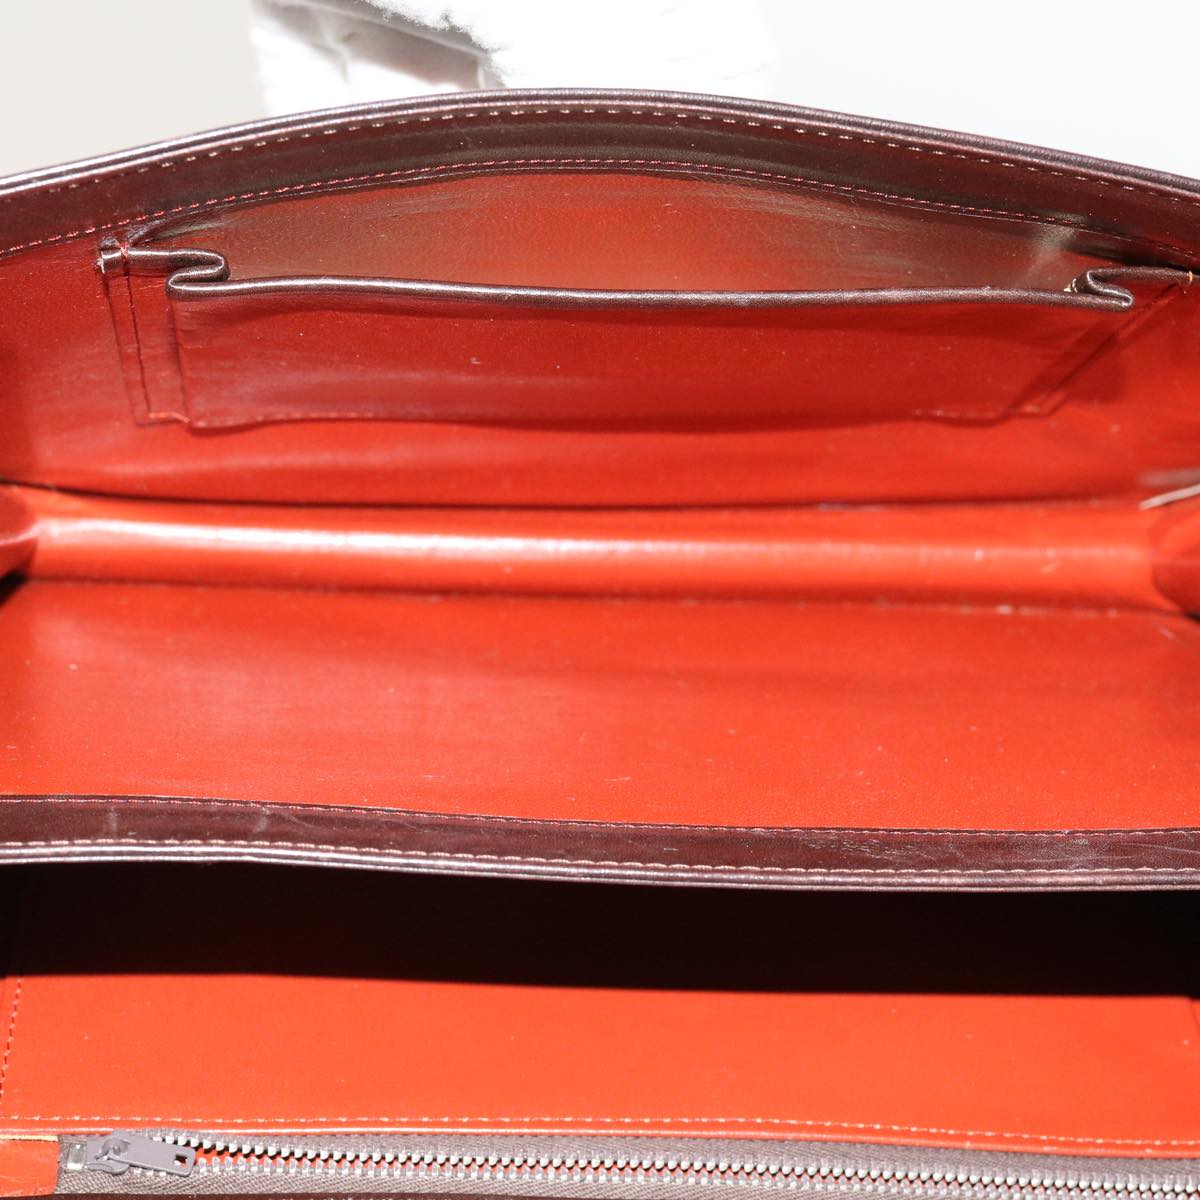 SAINT LAURENT Shoulder Bag Leather Brown Auth bs11089